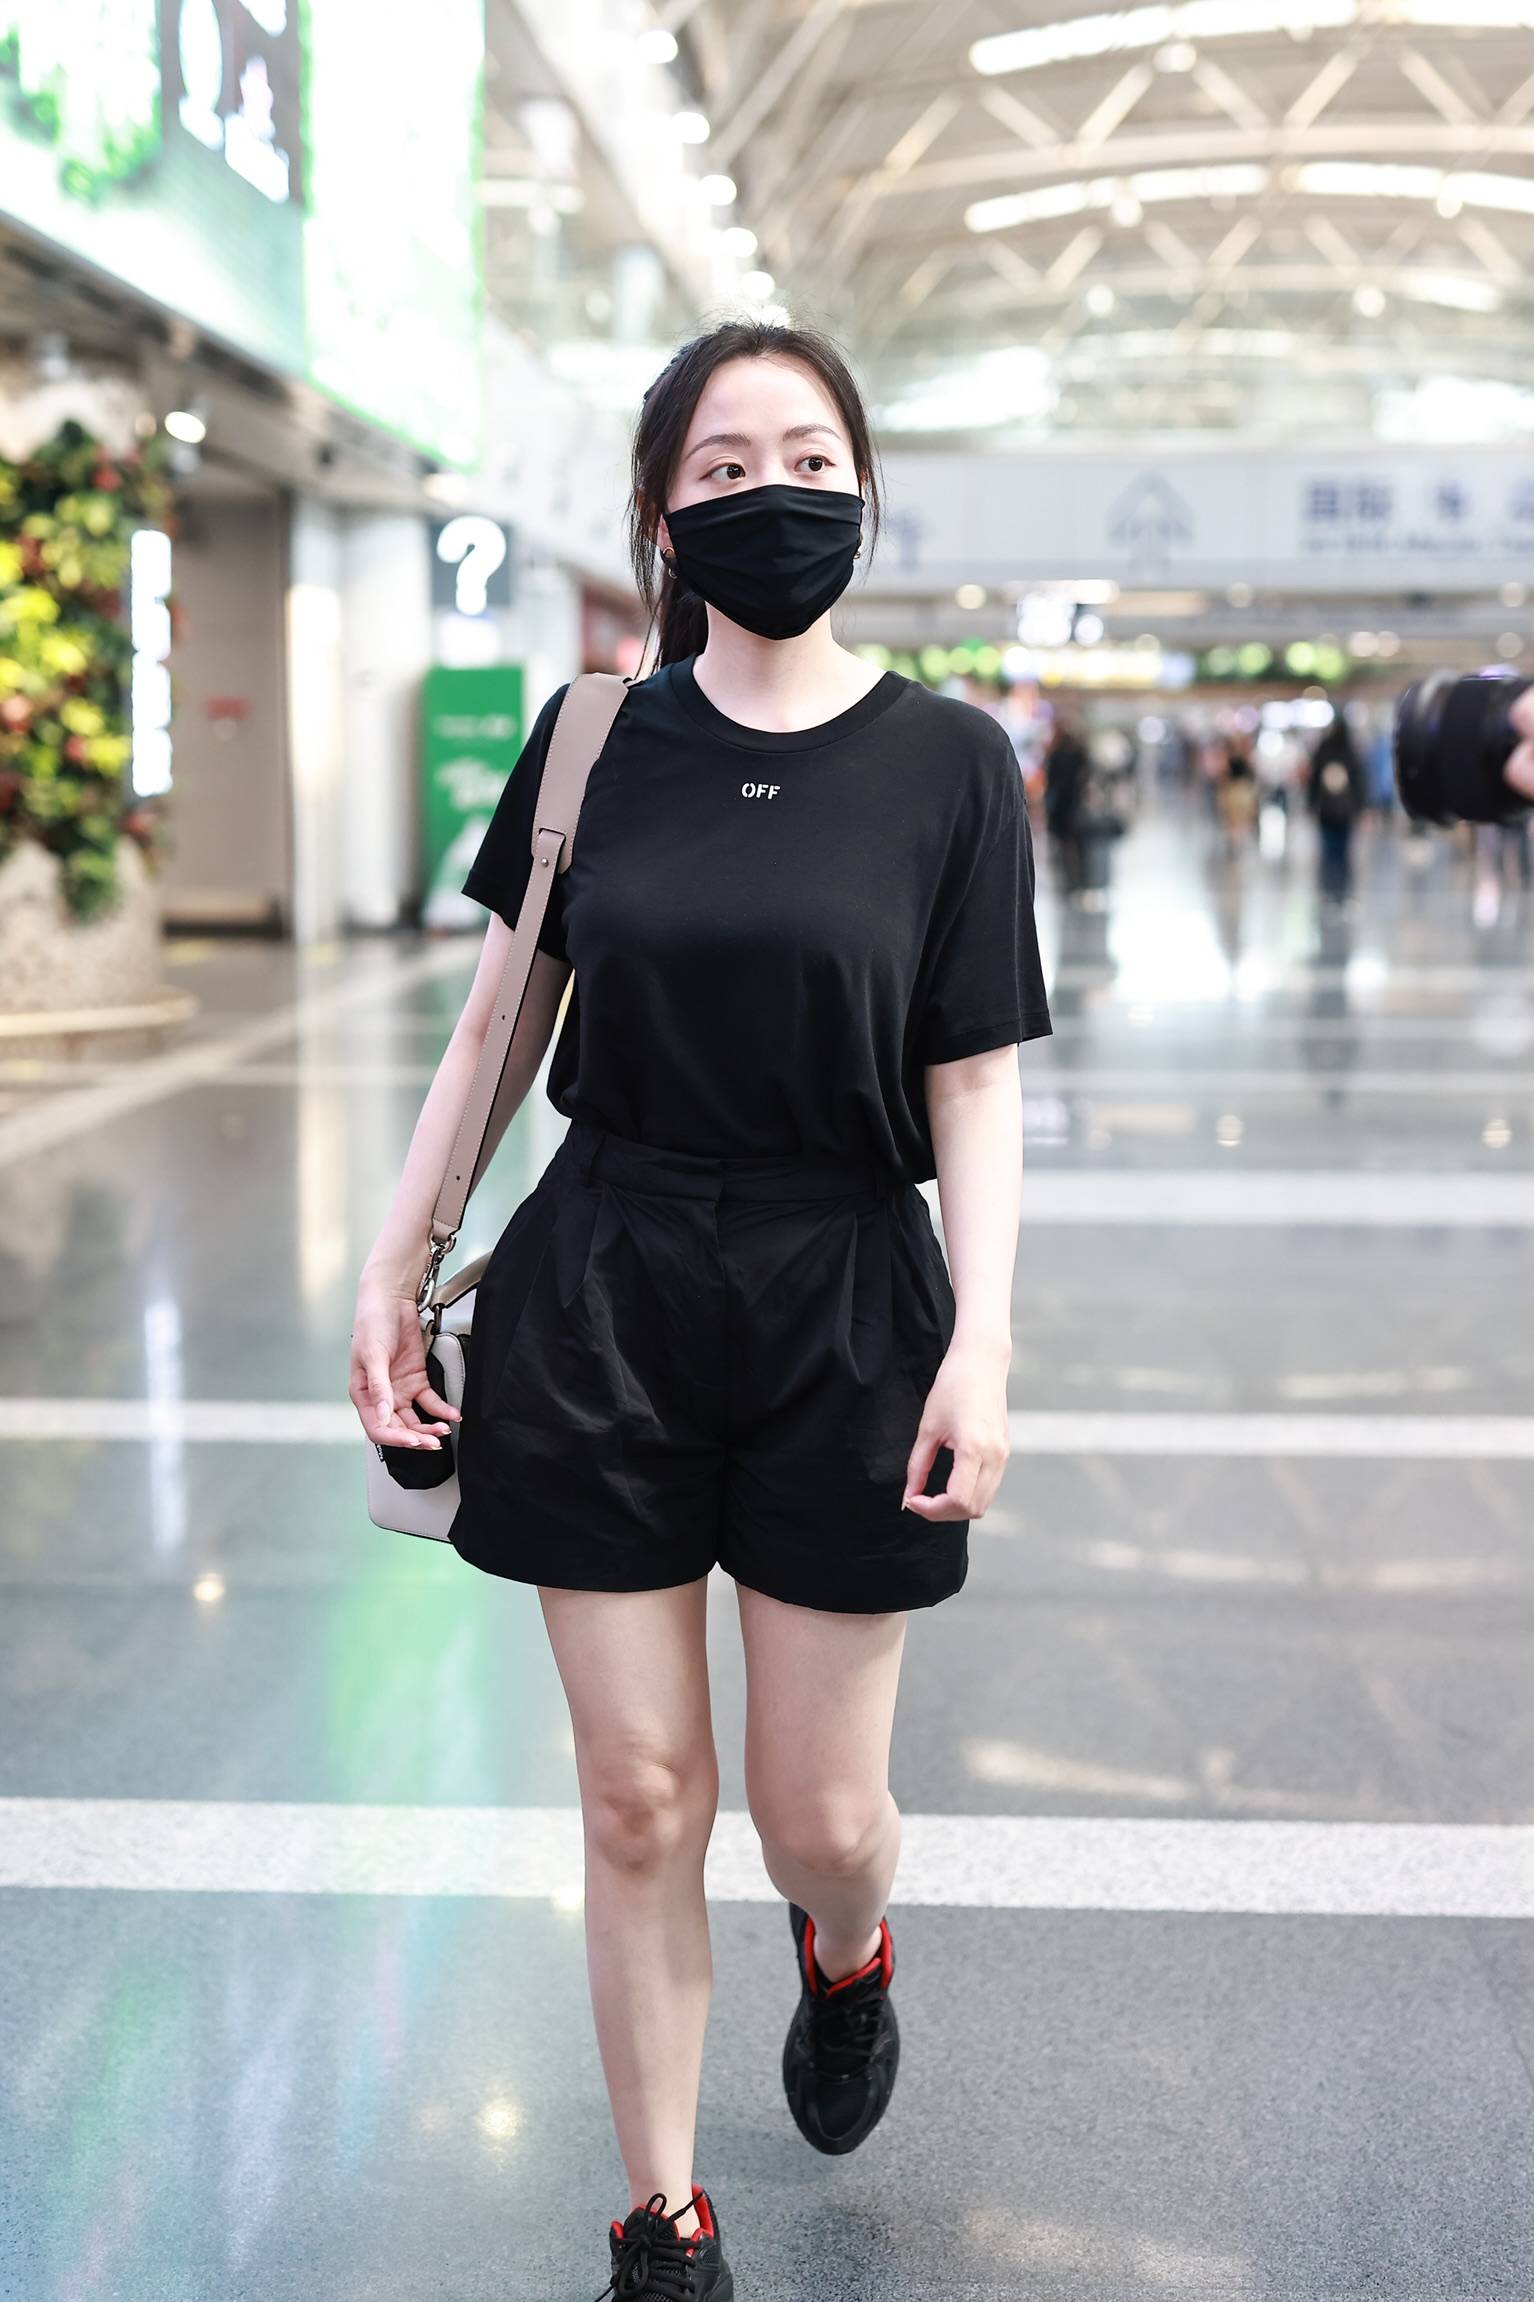 2021年6月8日,北京,张靓颖现身机场,同行的还有她的男友陈秋莳.